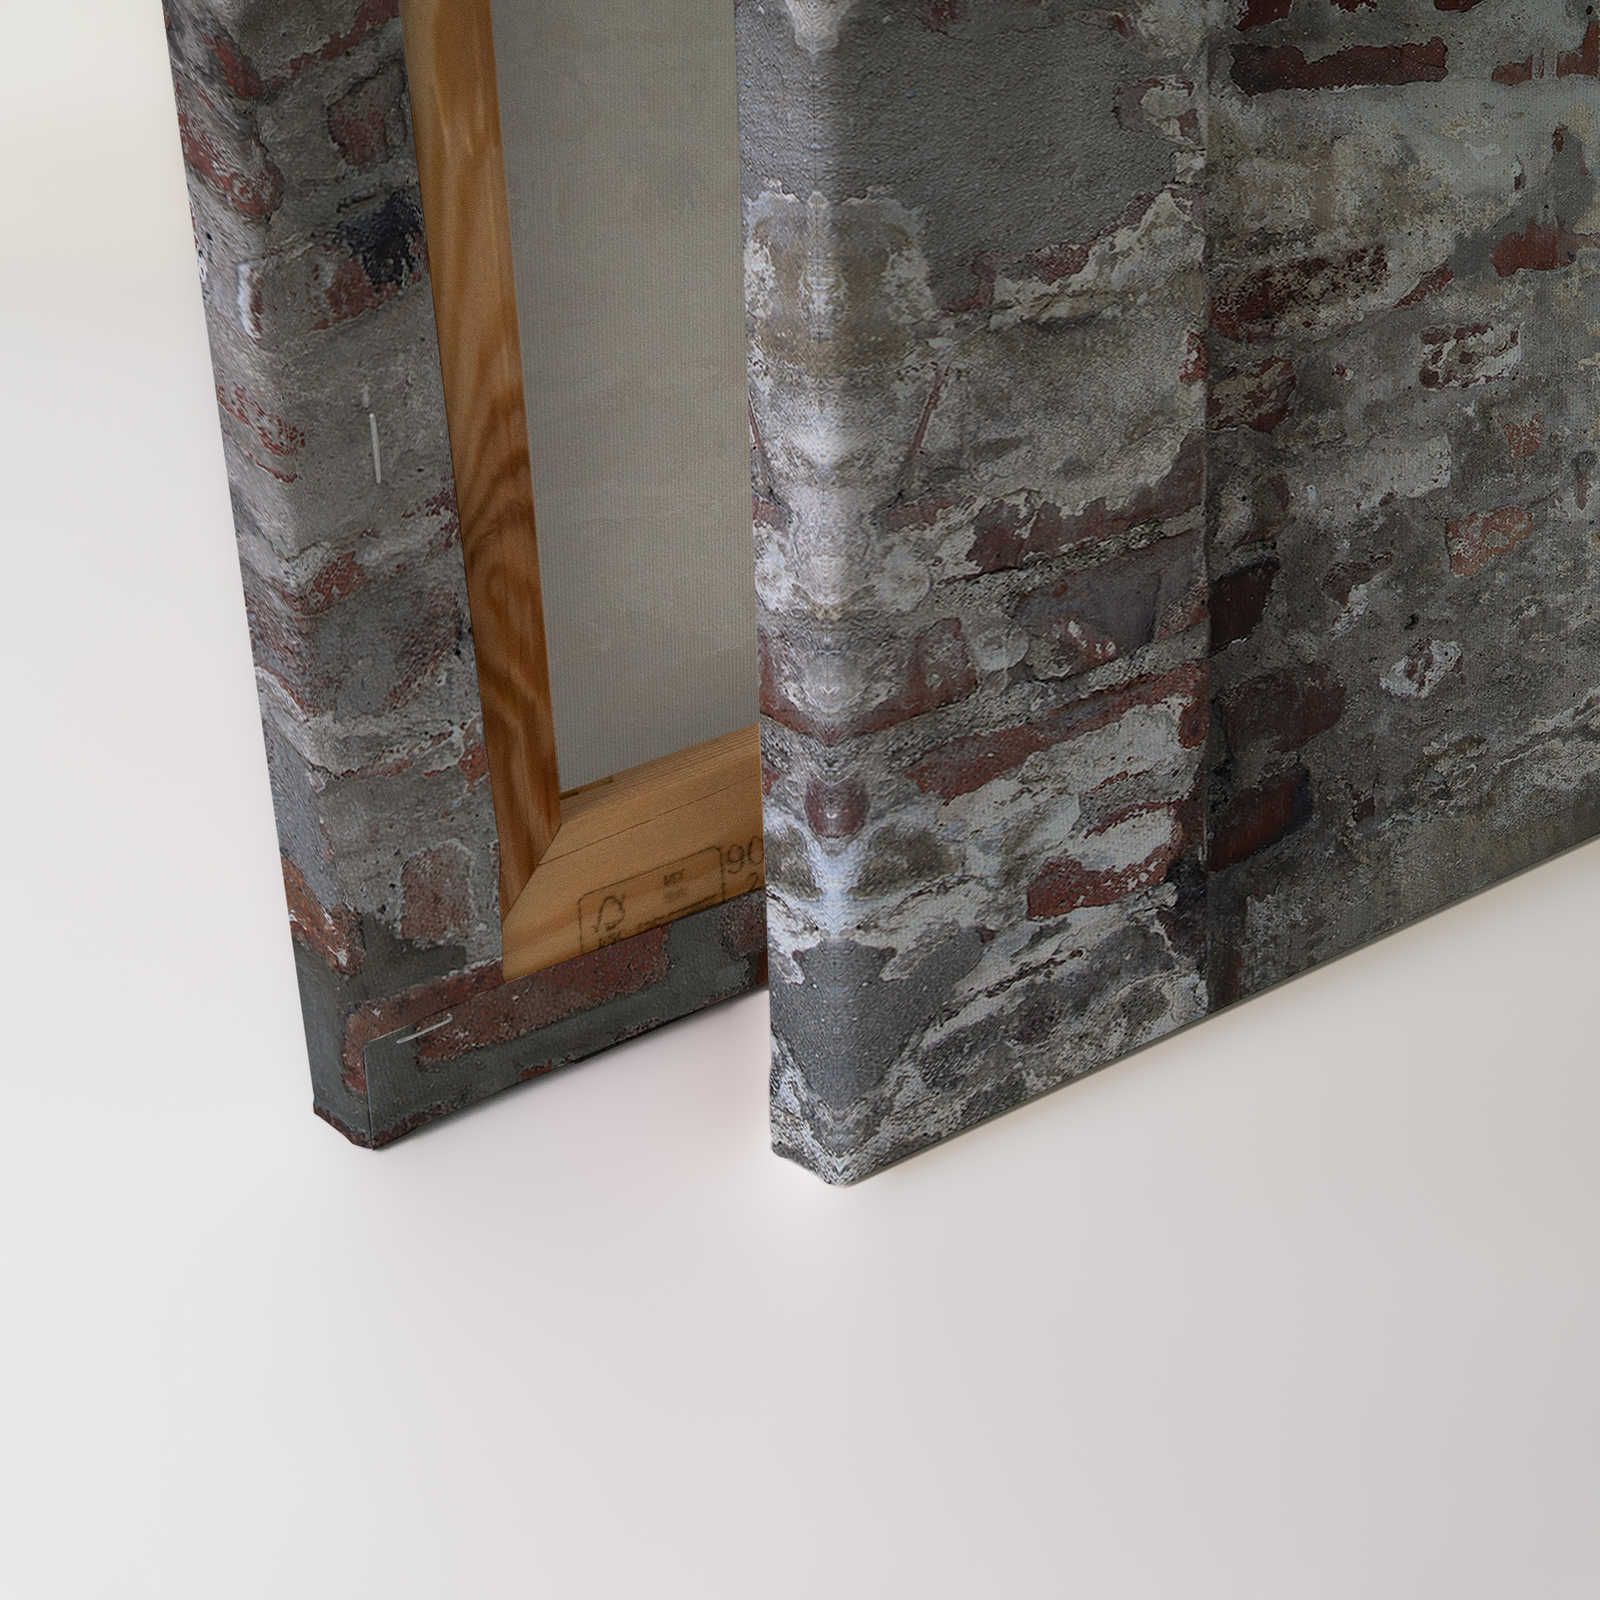             Tableau toile Maçonnerie brique & crépi aspect usé - 1,20 m x 0,80 m
        